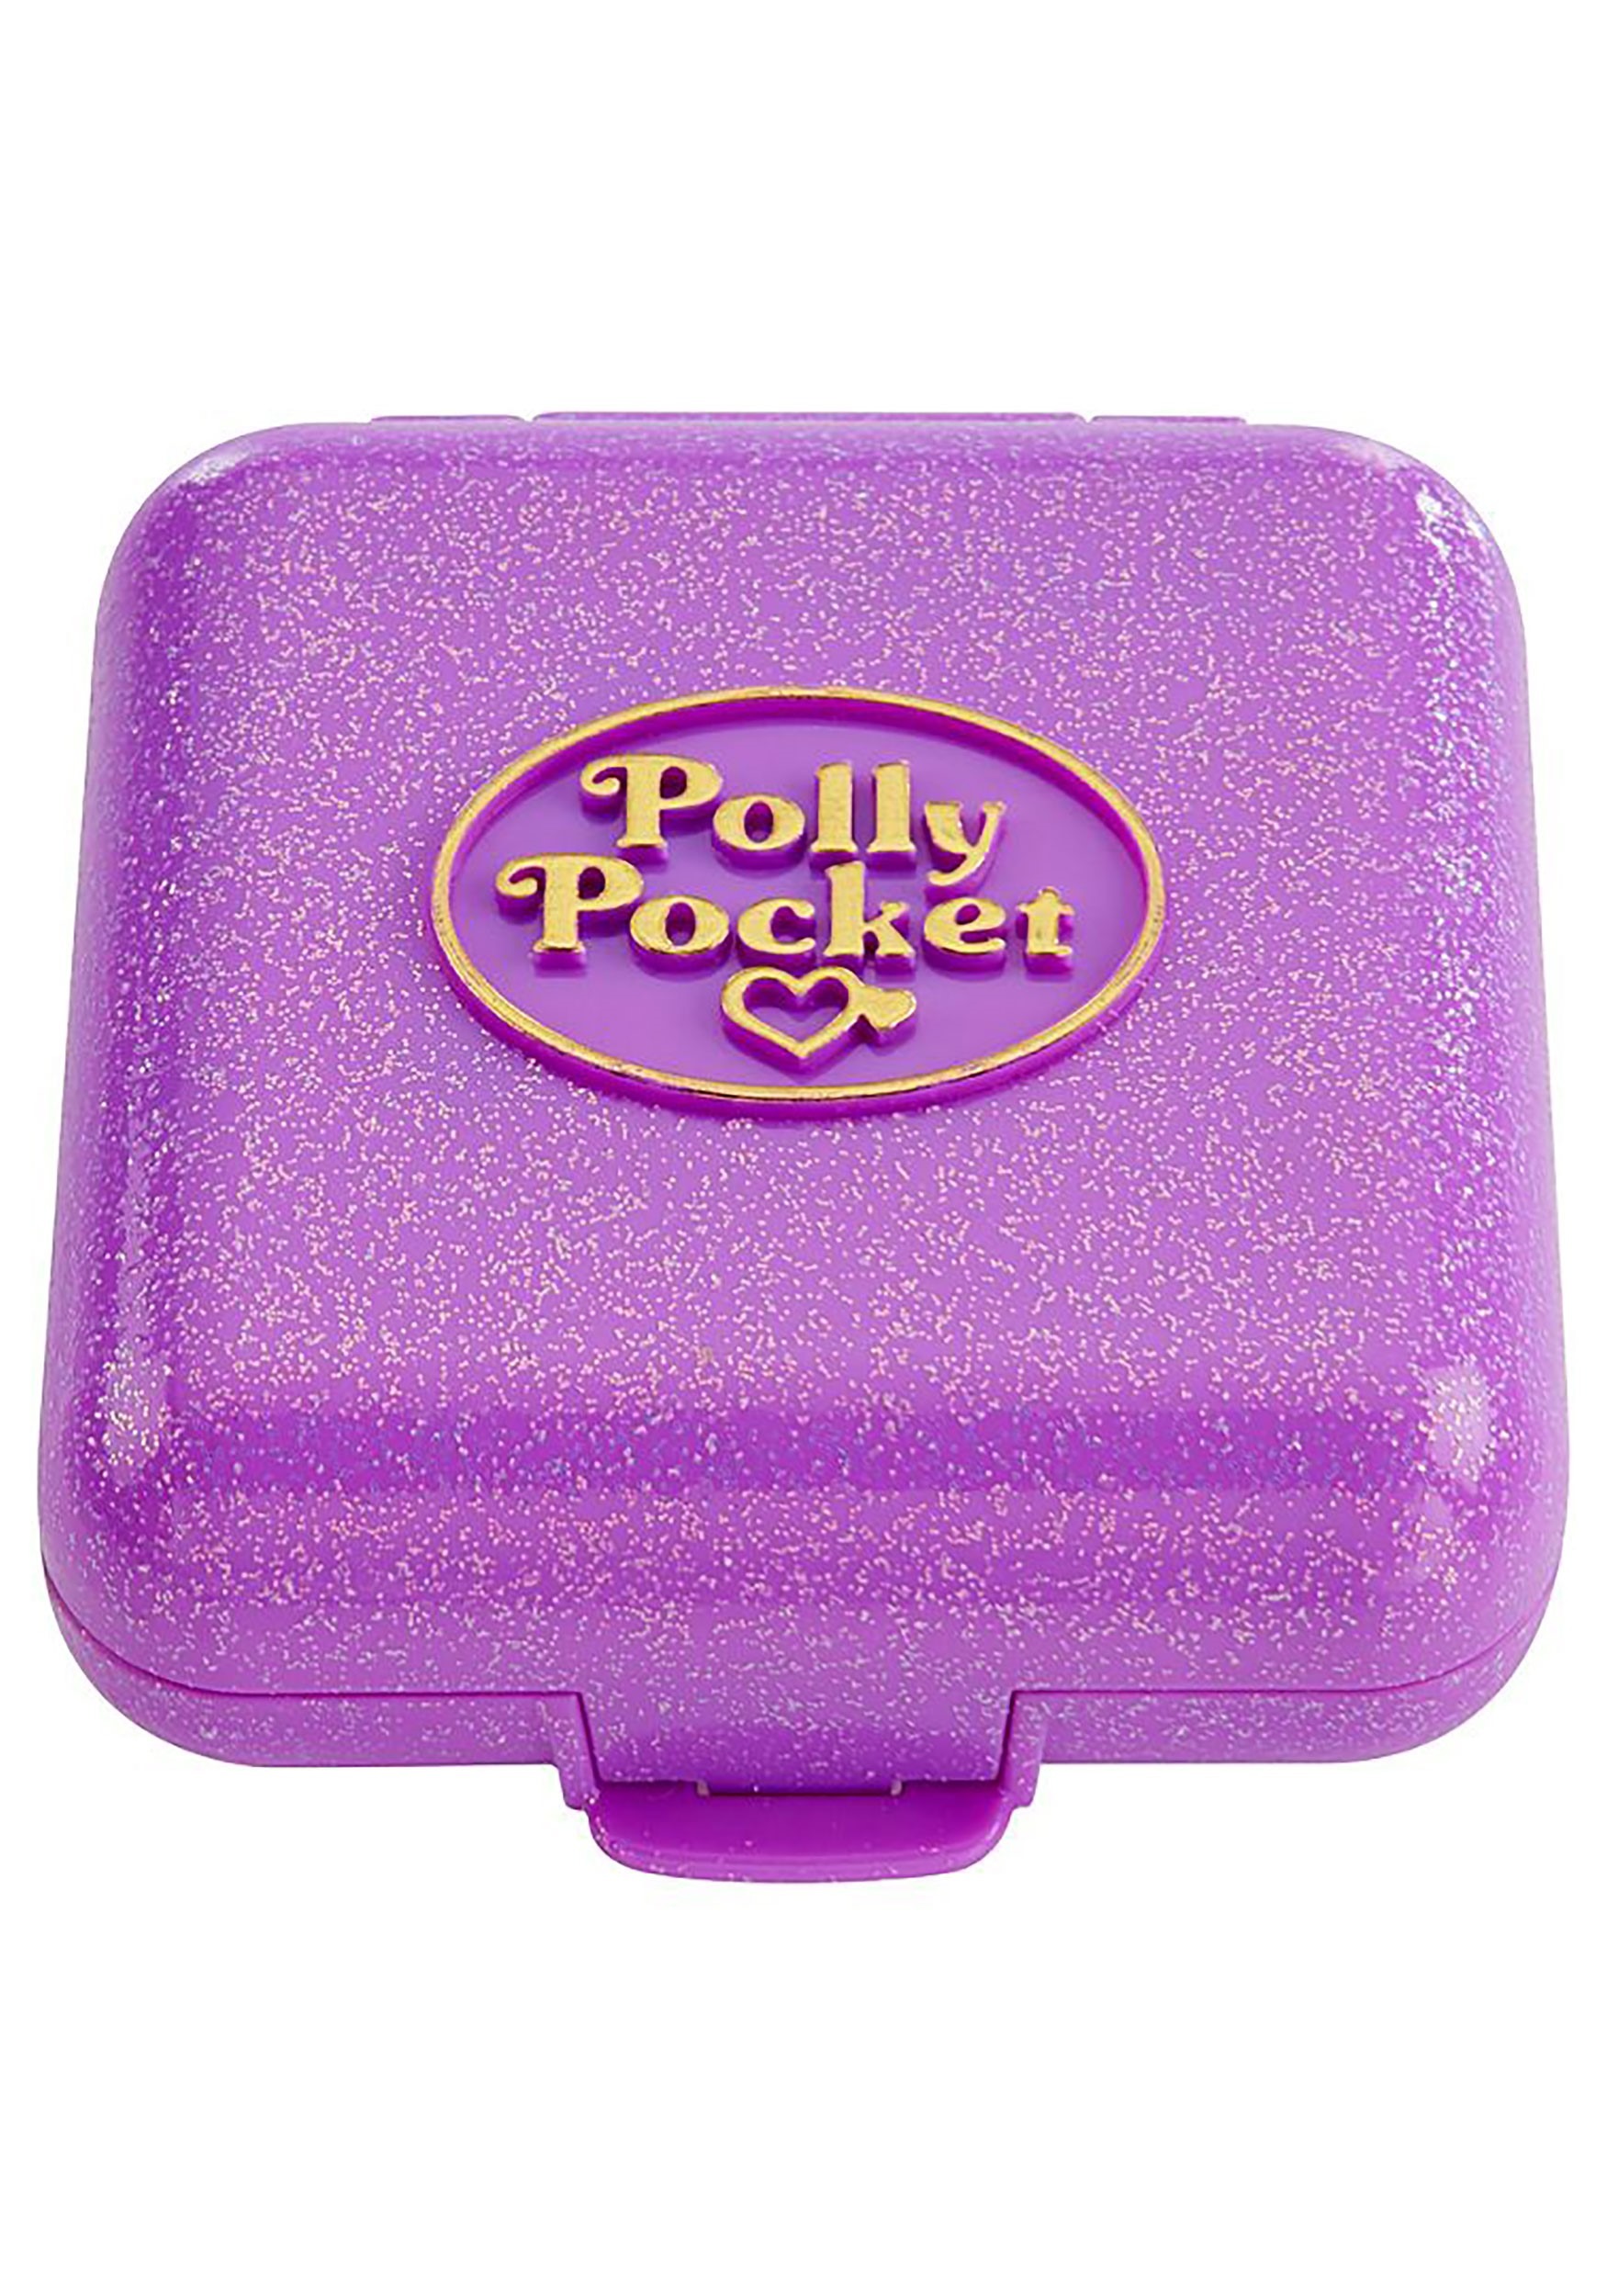 mattel polly pocket 30th anniversary